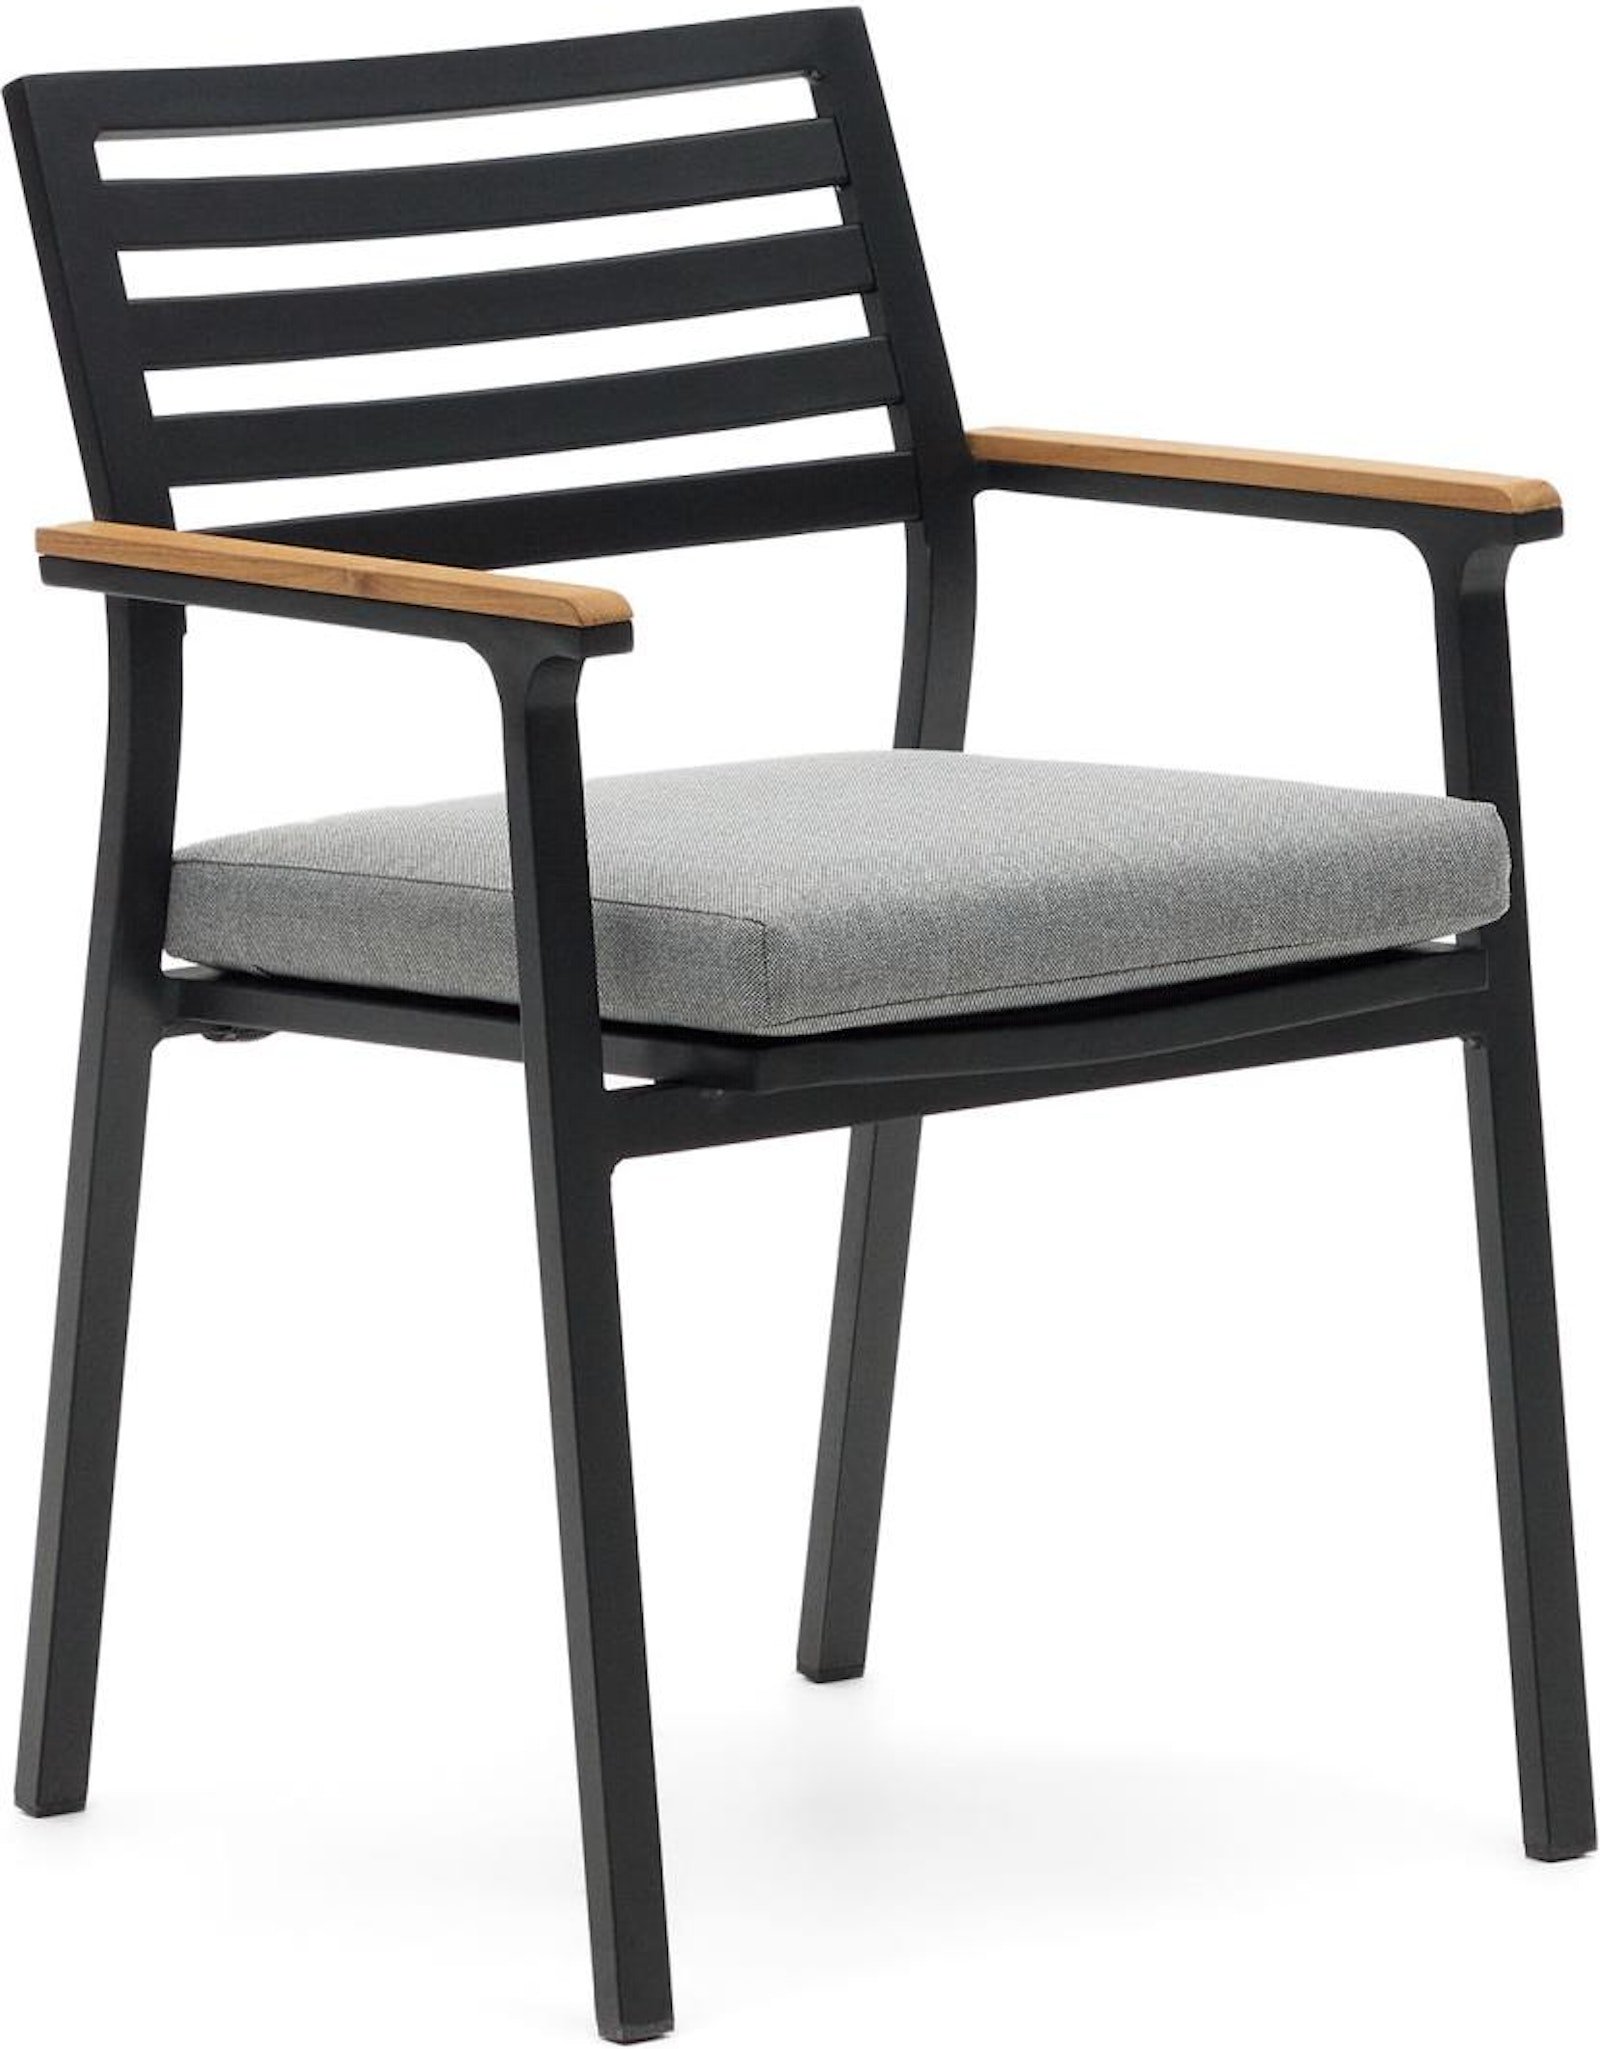 2: Bona, Udendørs stol, nordisk, moderne, metal by Laforma (H: 83 cm. x B: 57 cm. x L: 55 cm., Sort/Natur)